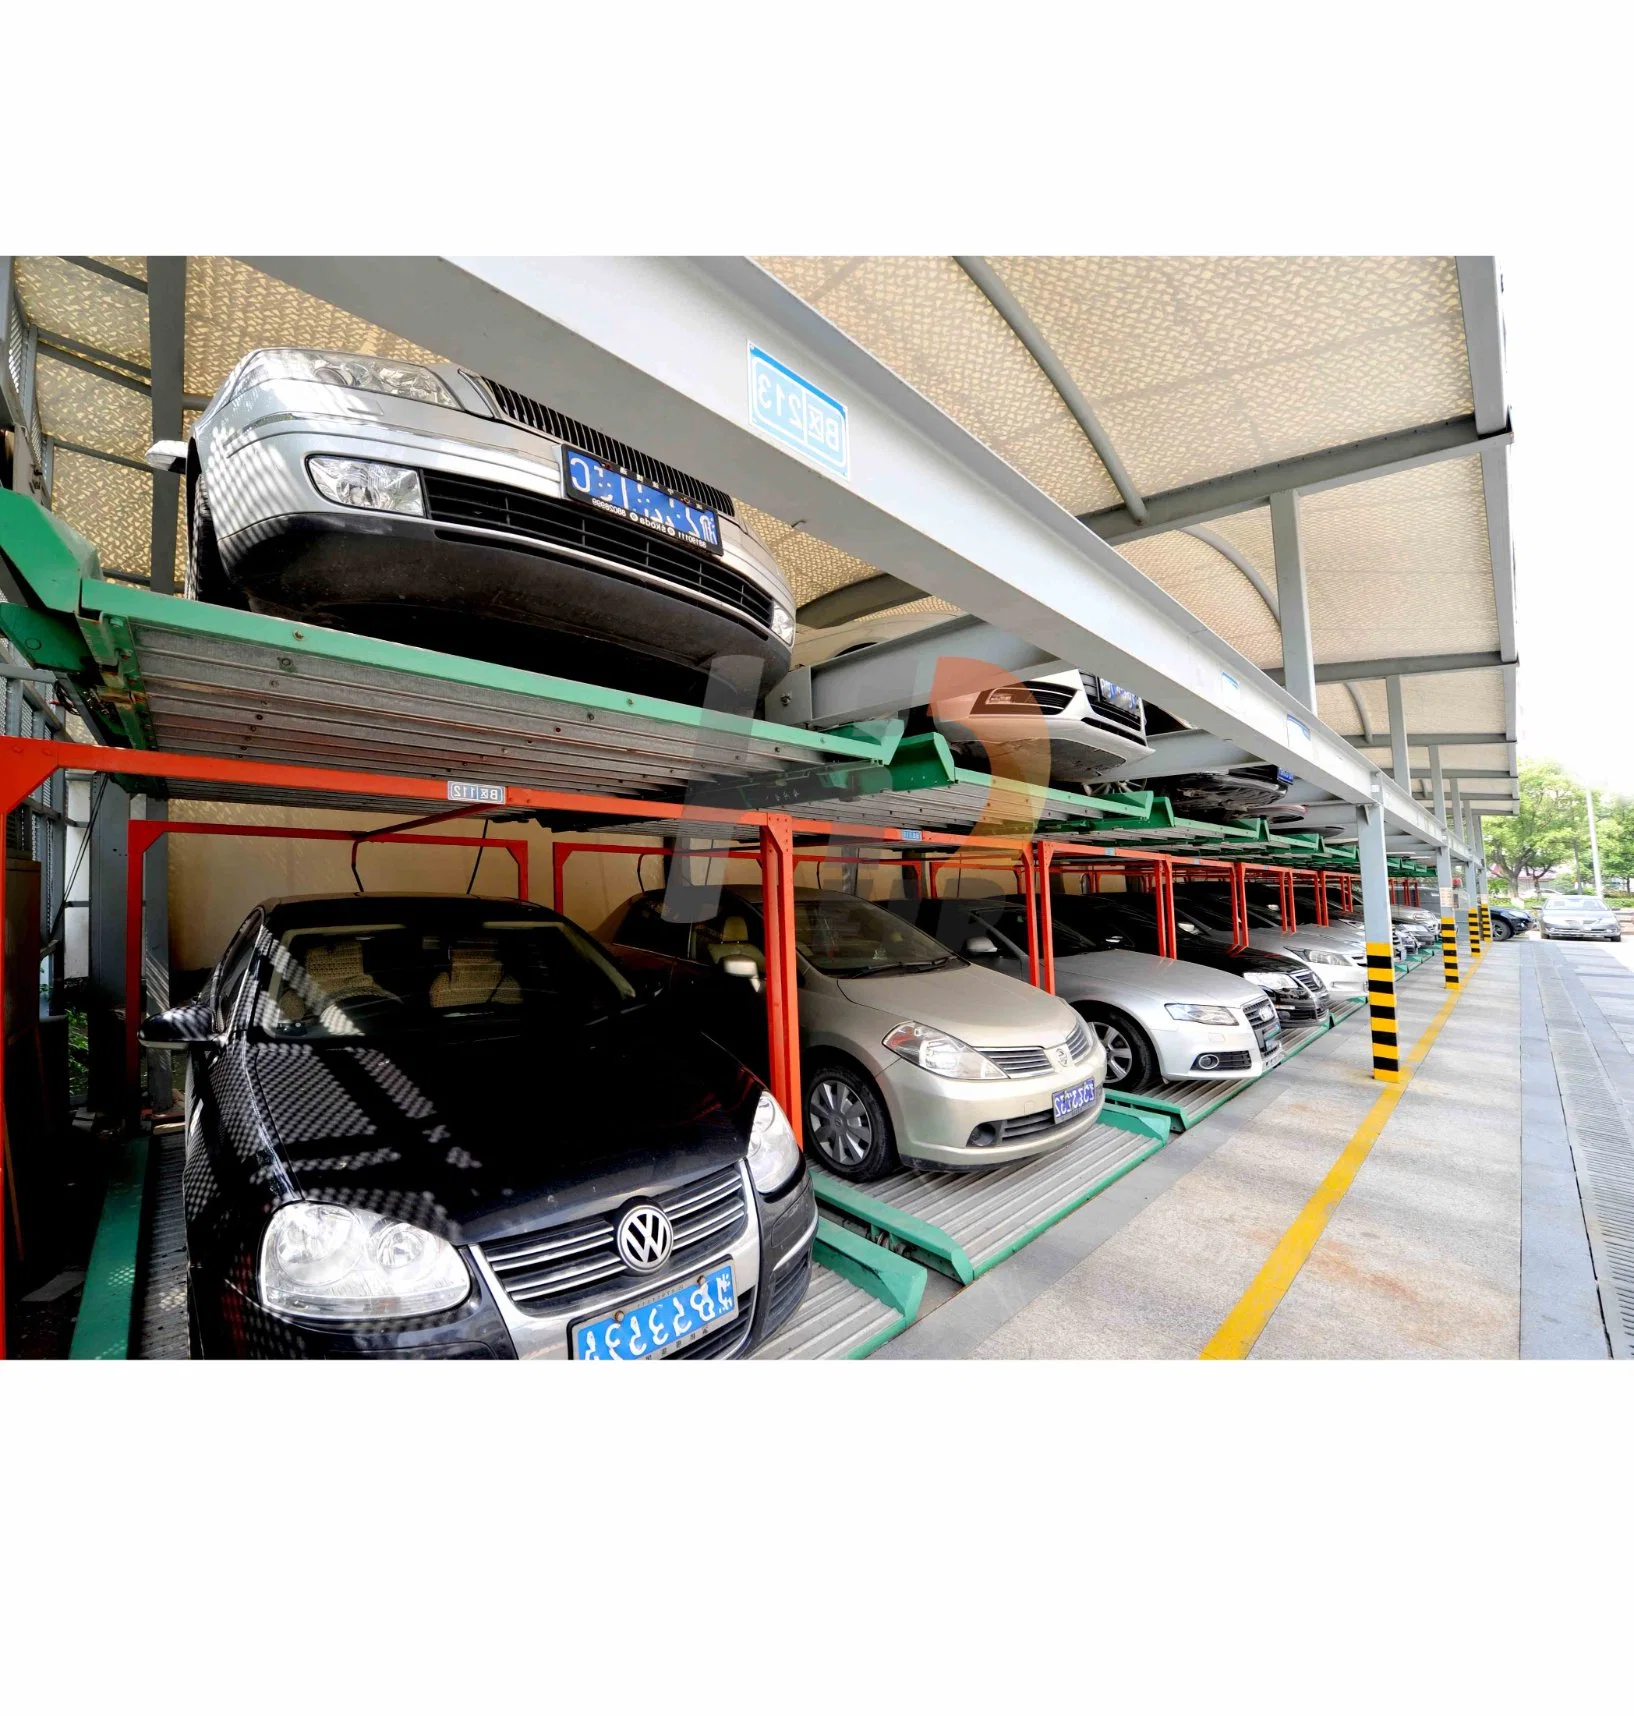 Система парковки и система парковки с двумя слоями для механических систем безопасности Оборудование Головоломки Механическая система парковки и хранение автомобиля Парковка Лот